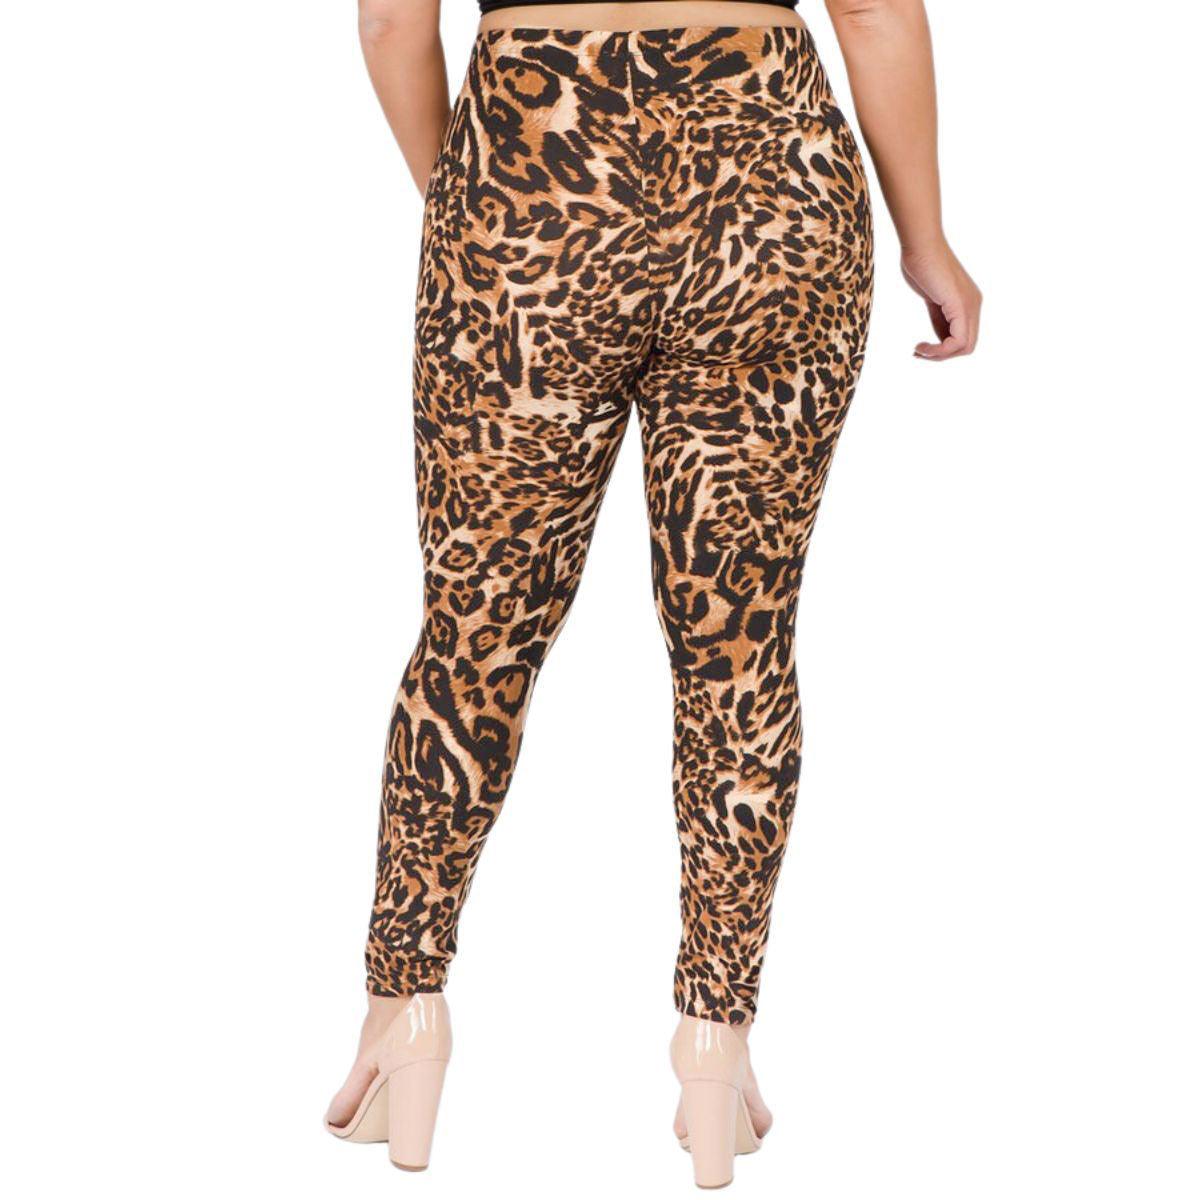 https://jewelrybubble.com/cdn/shop/products/roar-in-style-trendy-plus-size-leopard-print-leggings-buy-now-jewelry-bubble-2.jpg?v=1707969439